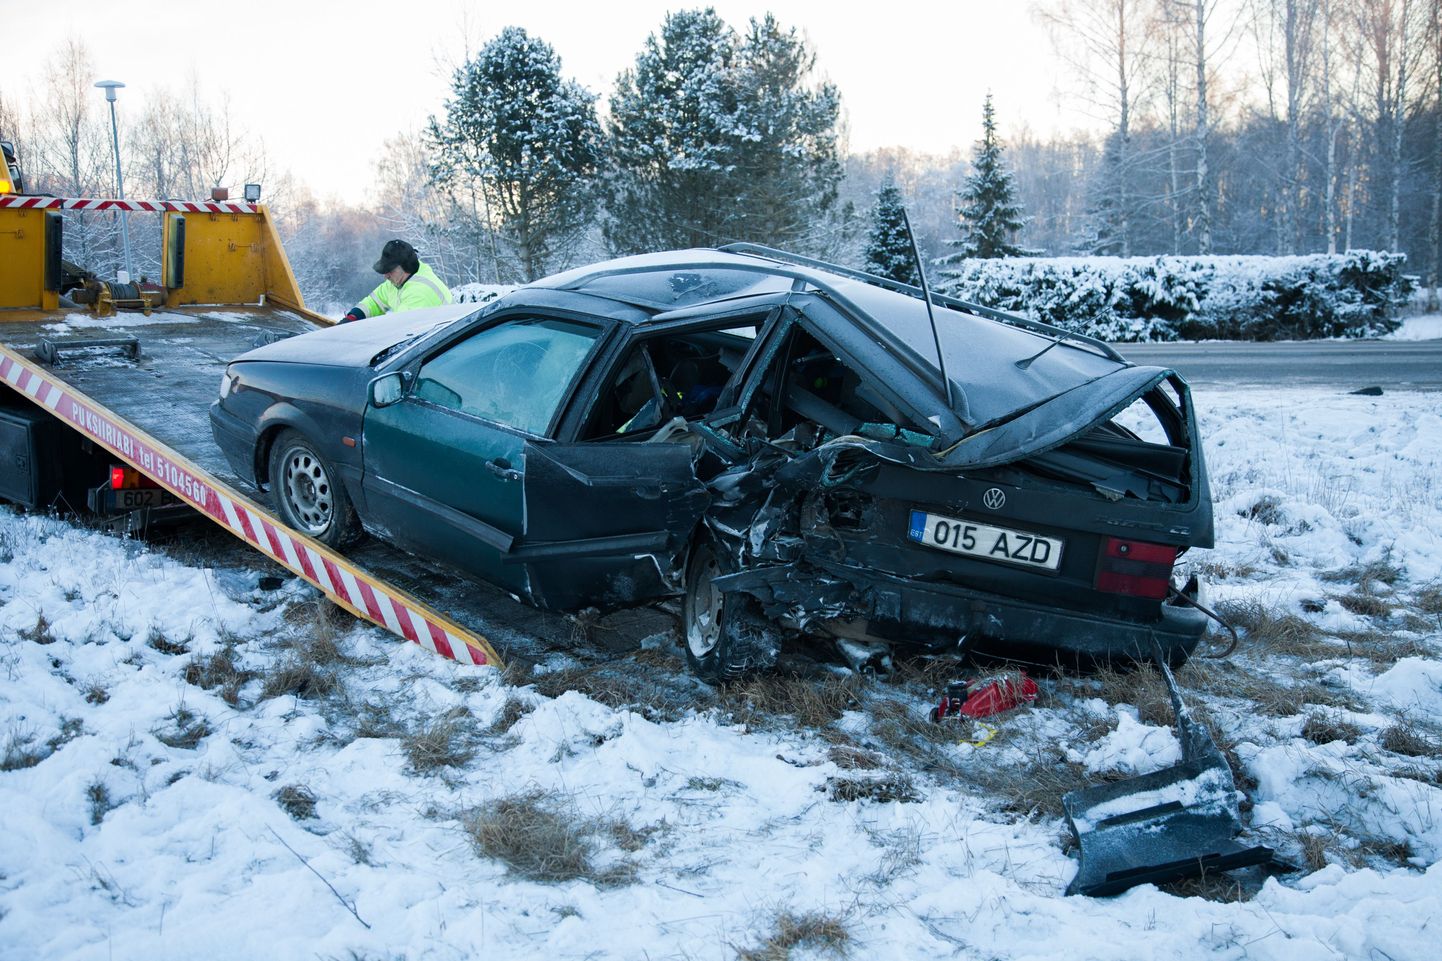 Liiklusõnnetus Türi-Allikul.
DMITRI KOTJUH, JÄRVA TEATAJA/SCANPIX